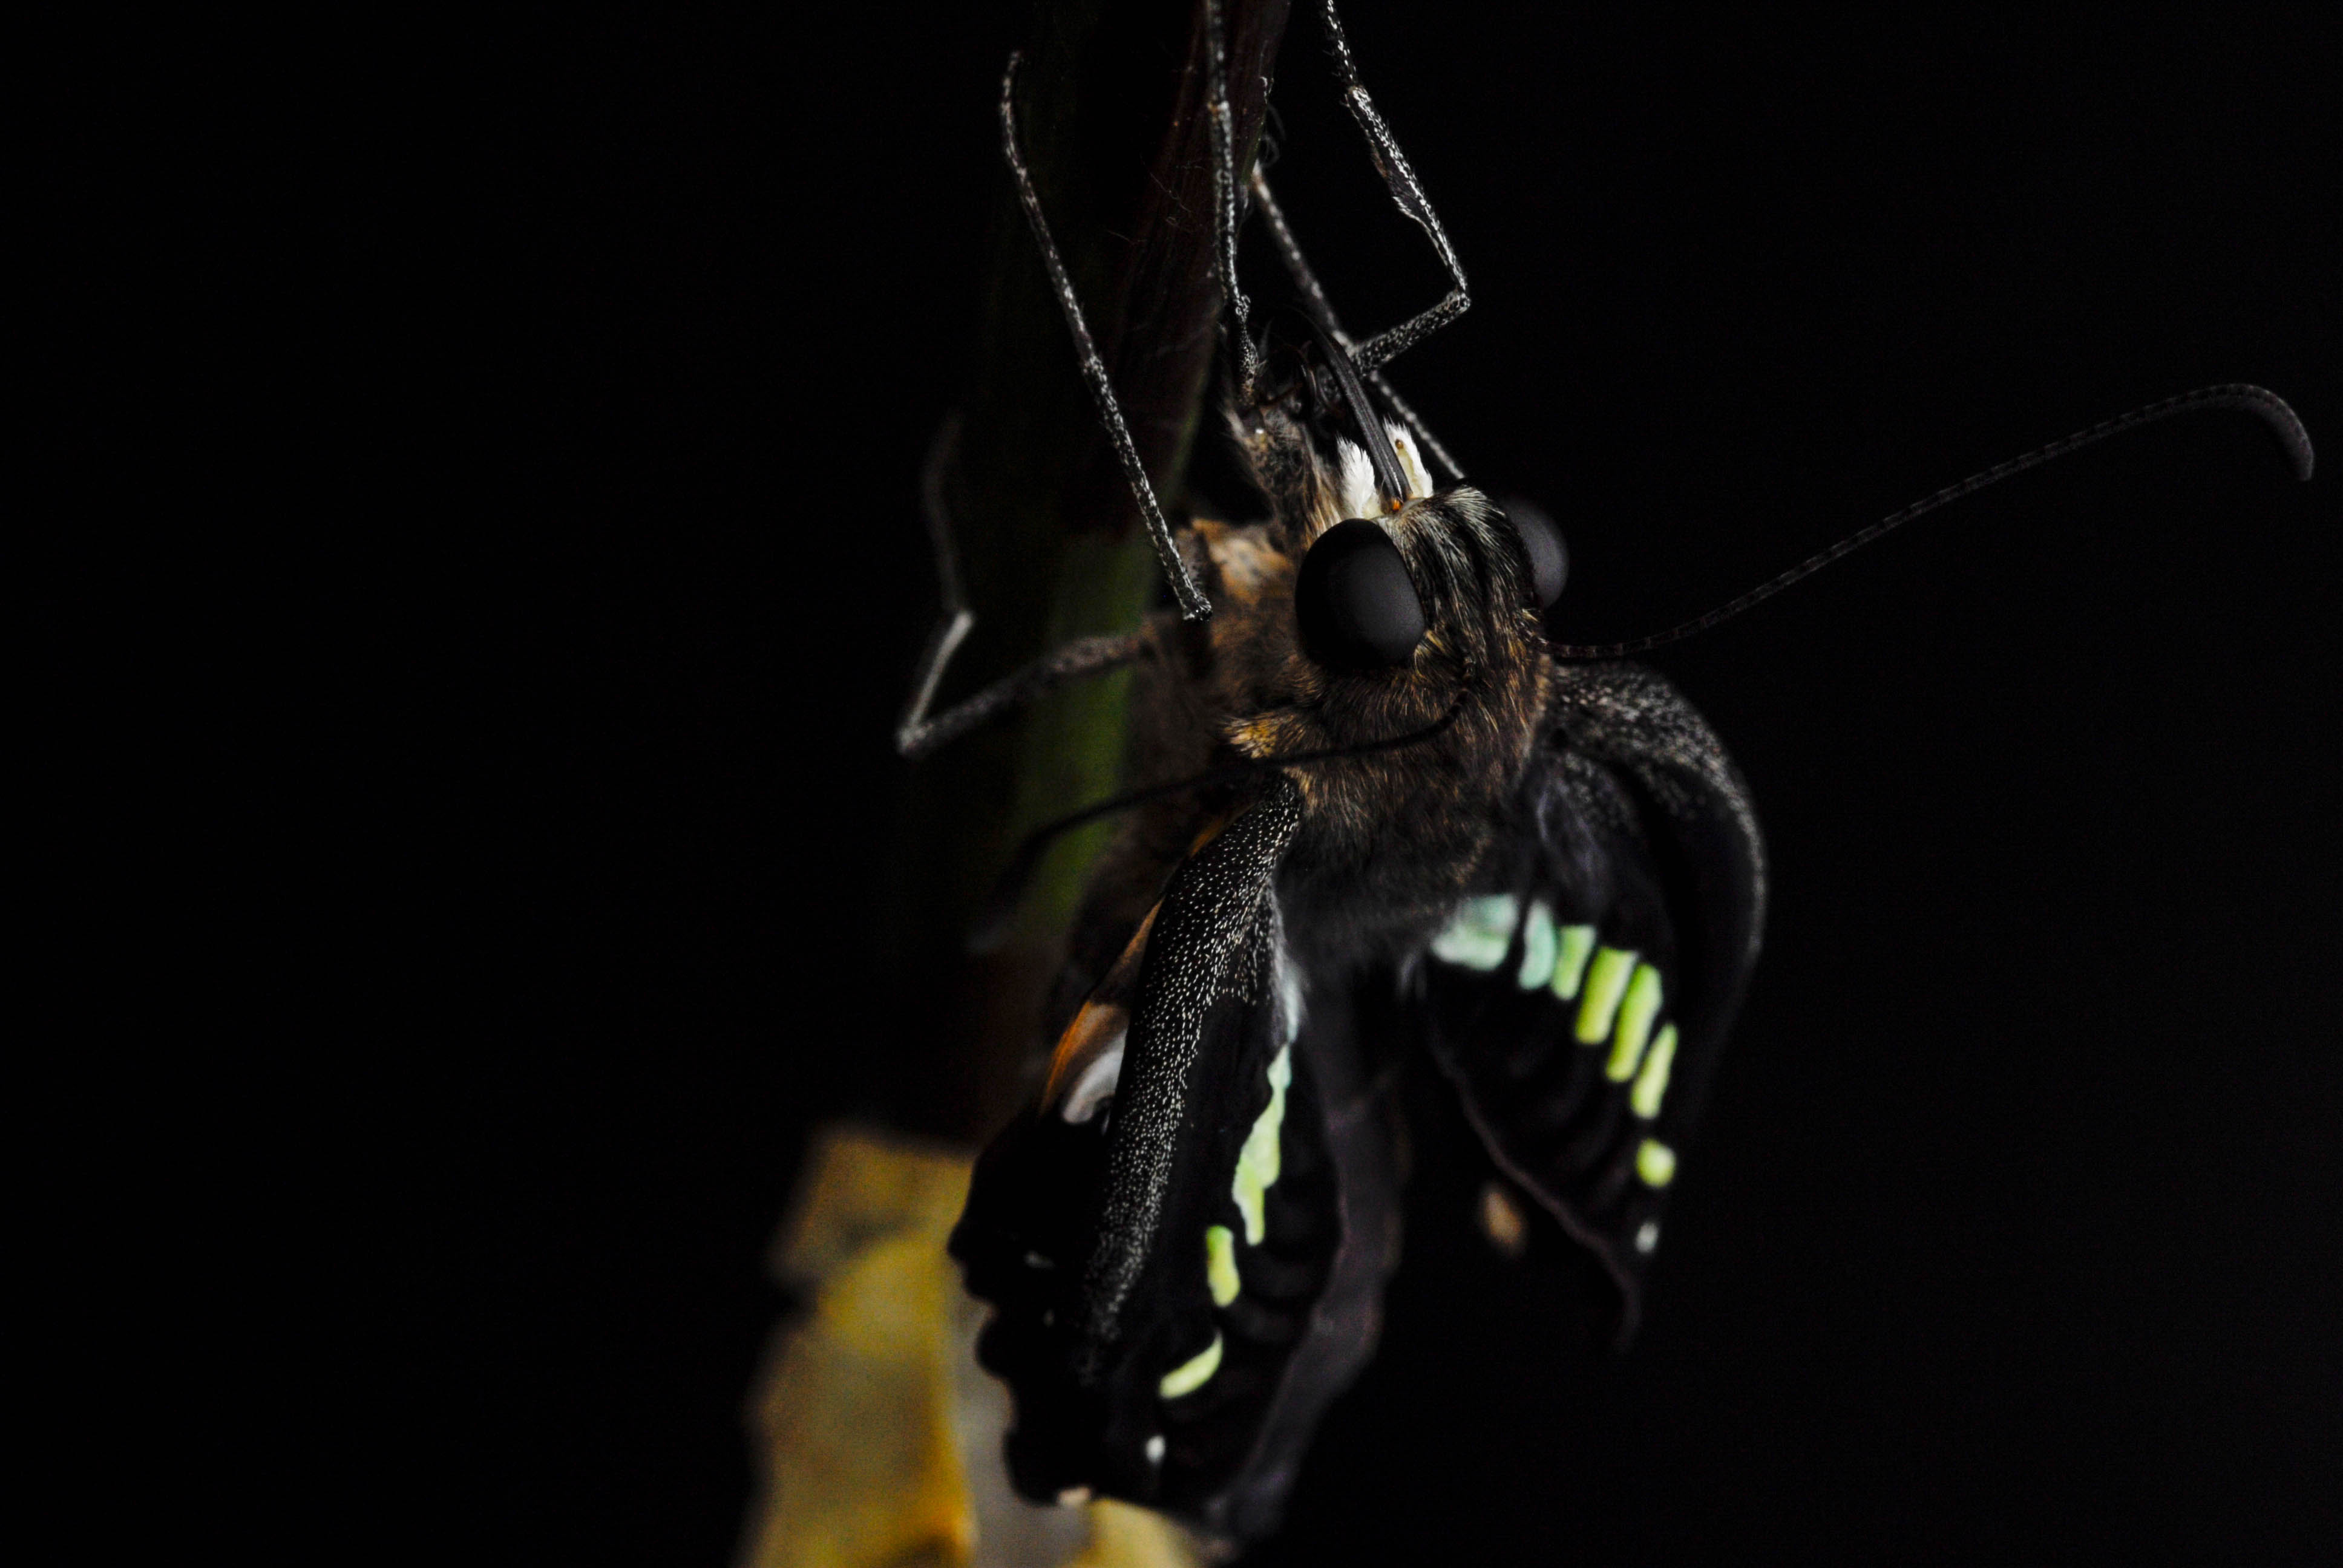 アオスジアゲハの特徴や飼育も 虫の写真と生態なら昆虫写真図鑑 ムシミル